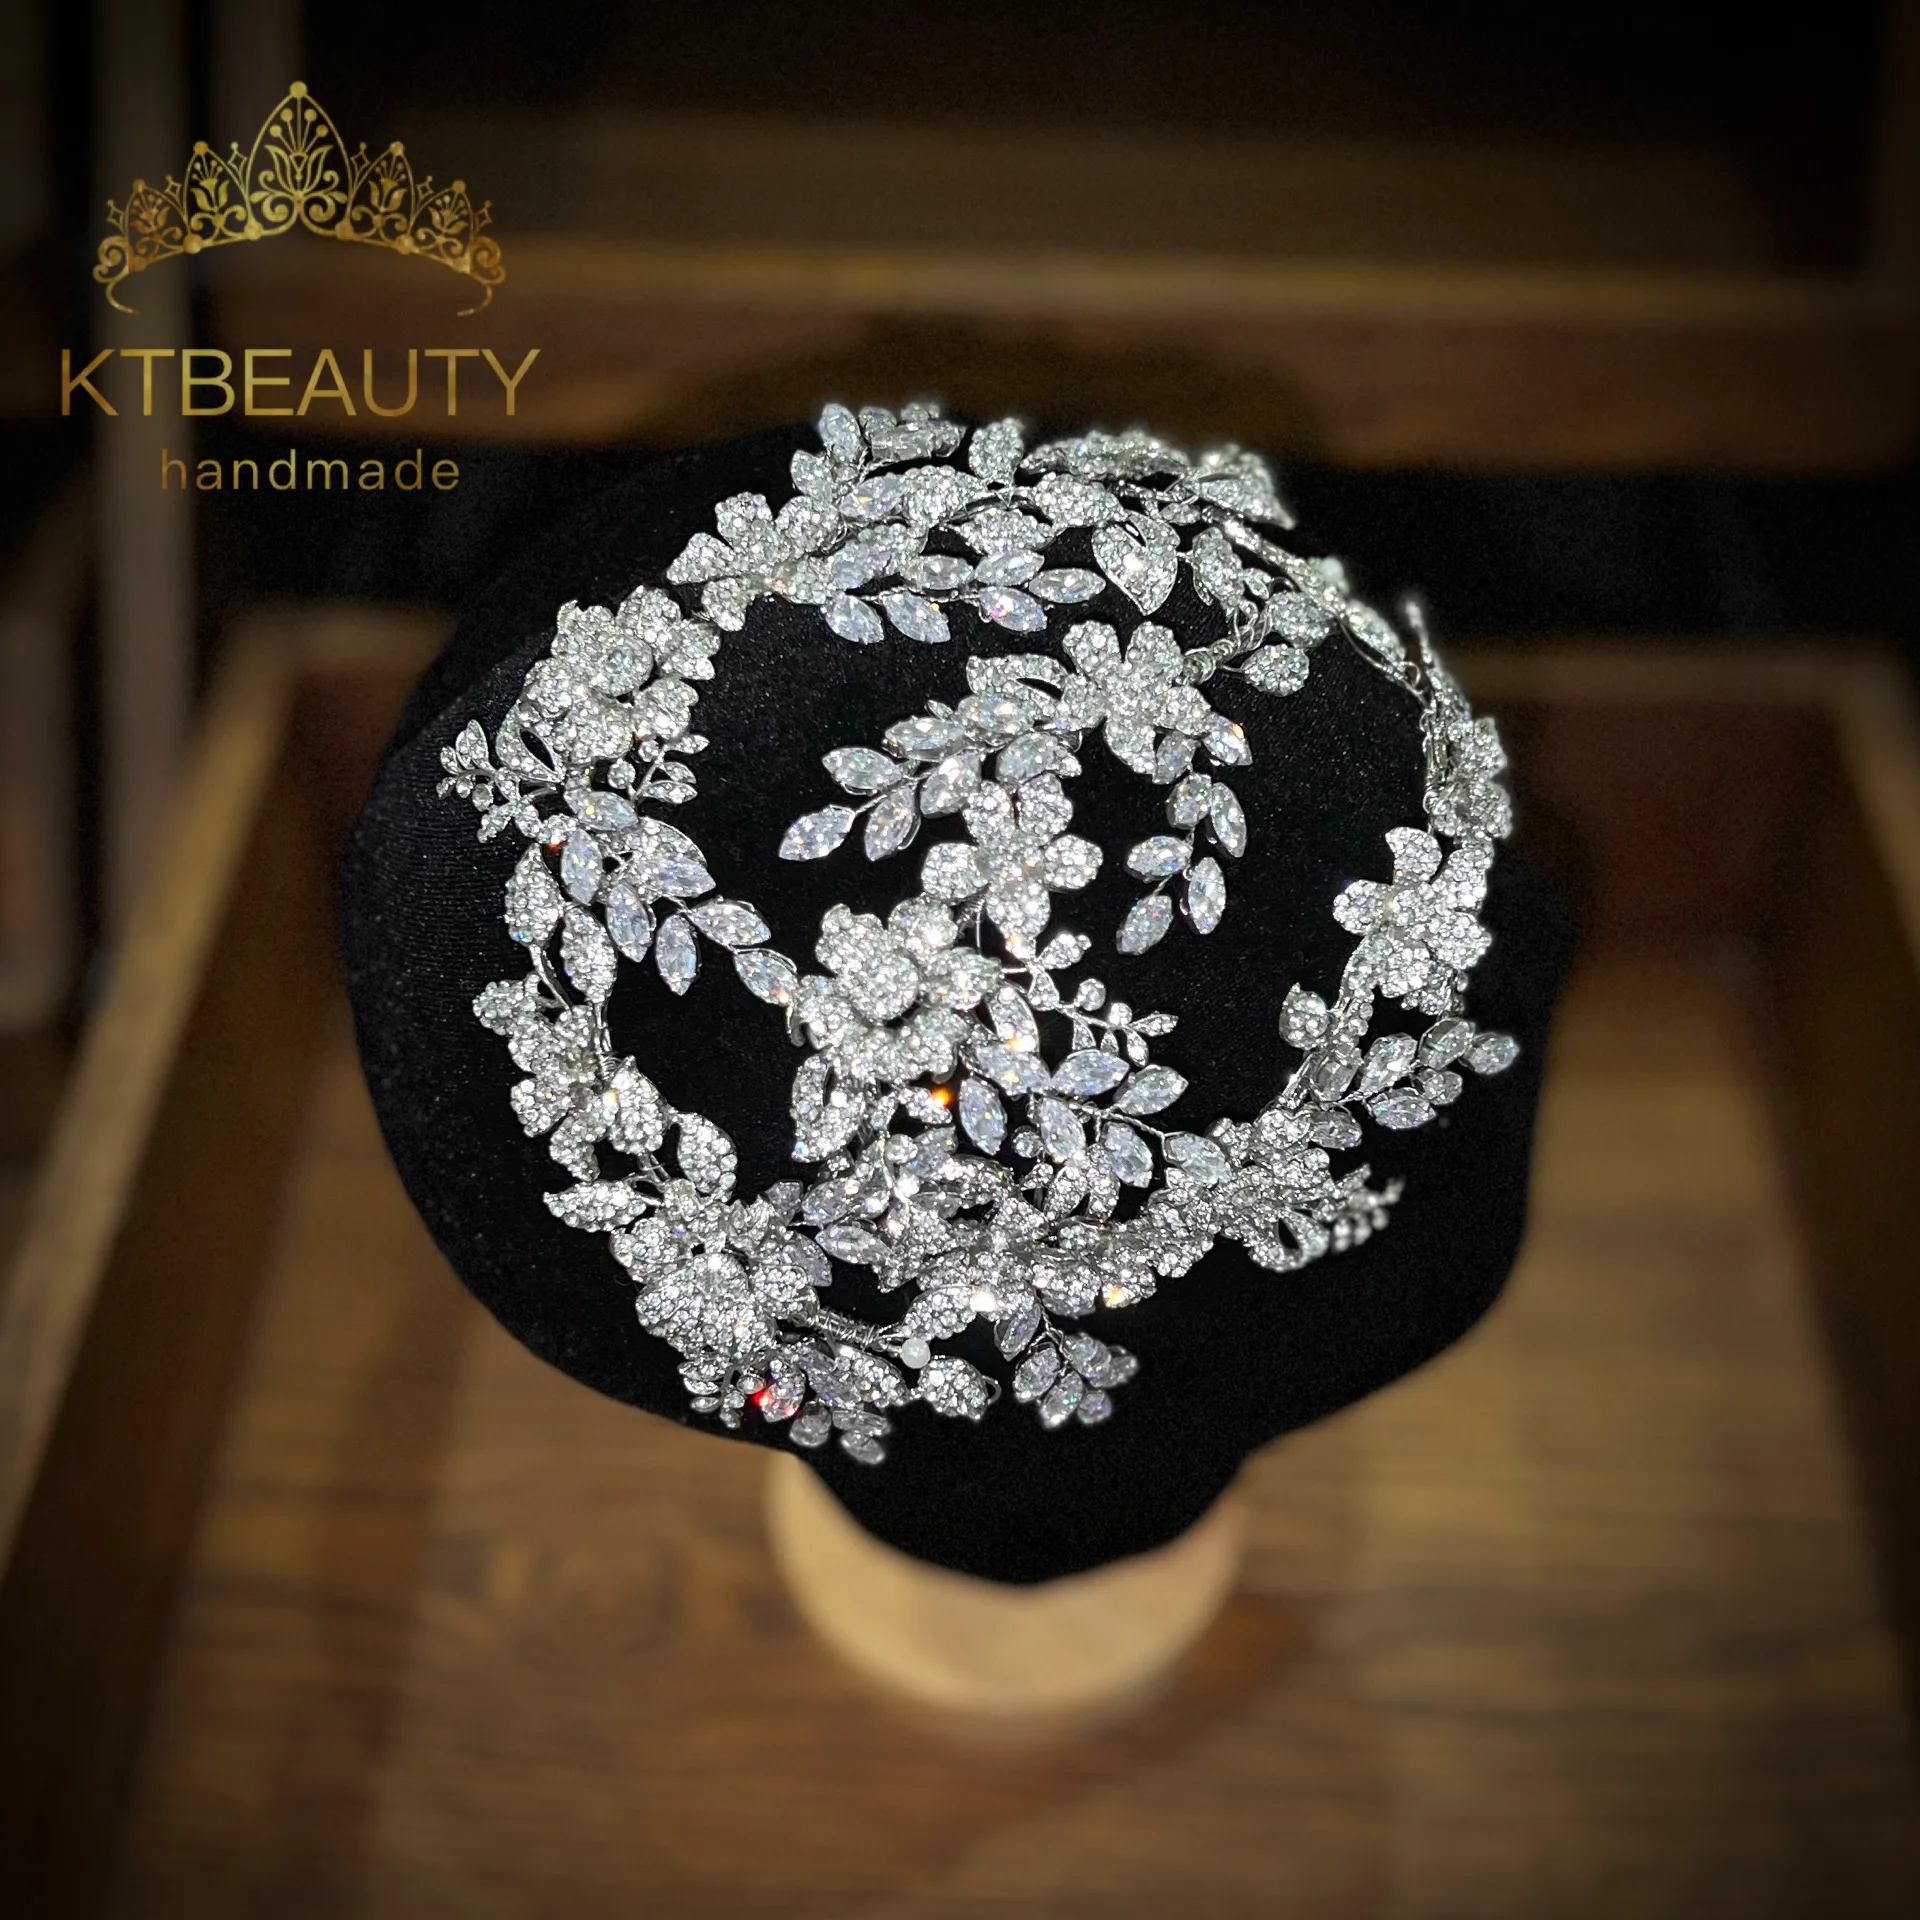 

KTBEAUTY головной убор ручной работы хрустальные цветы циркониевые листья родиевое серебро Королева Принцесса Корона для торжества вечеринки подружки невесты